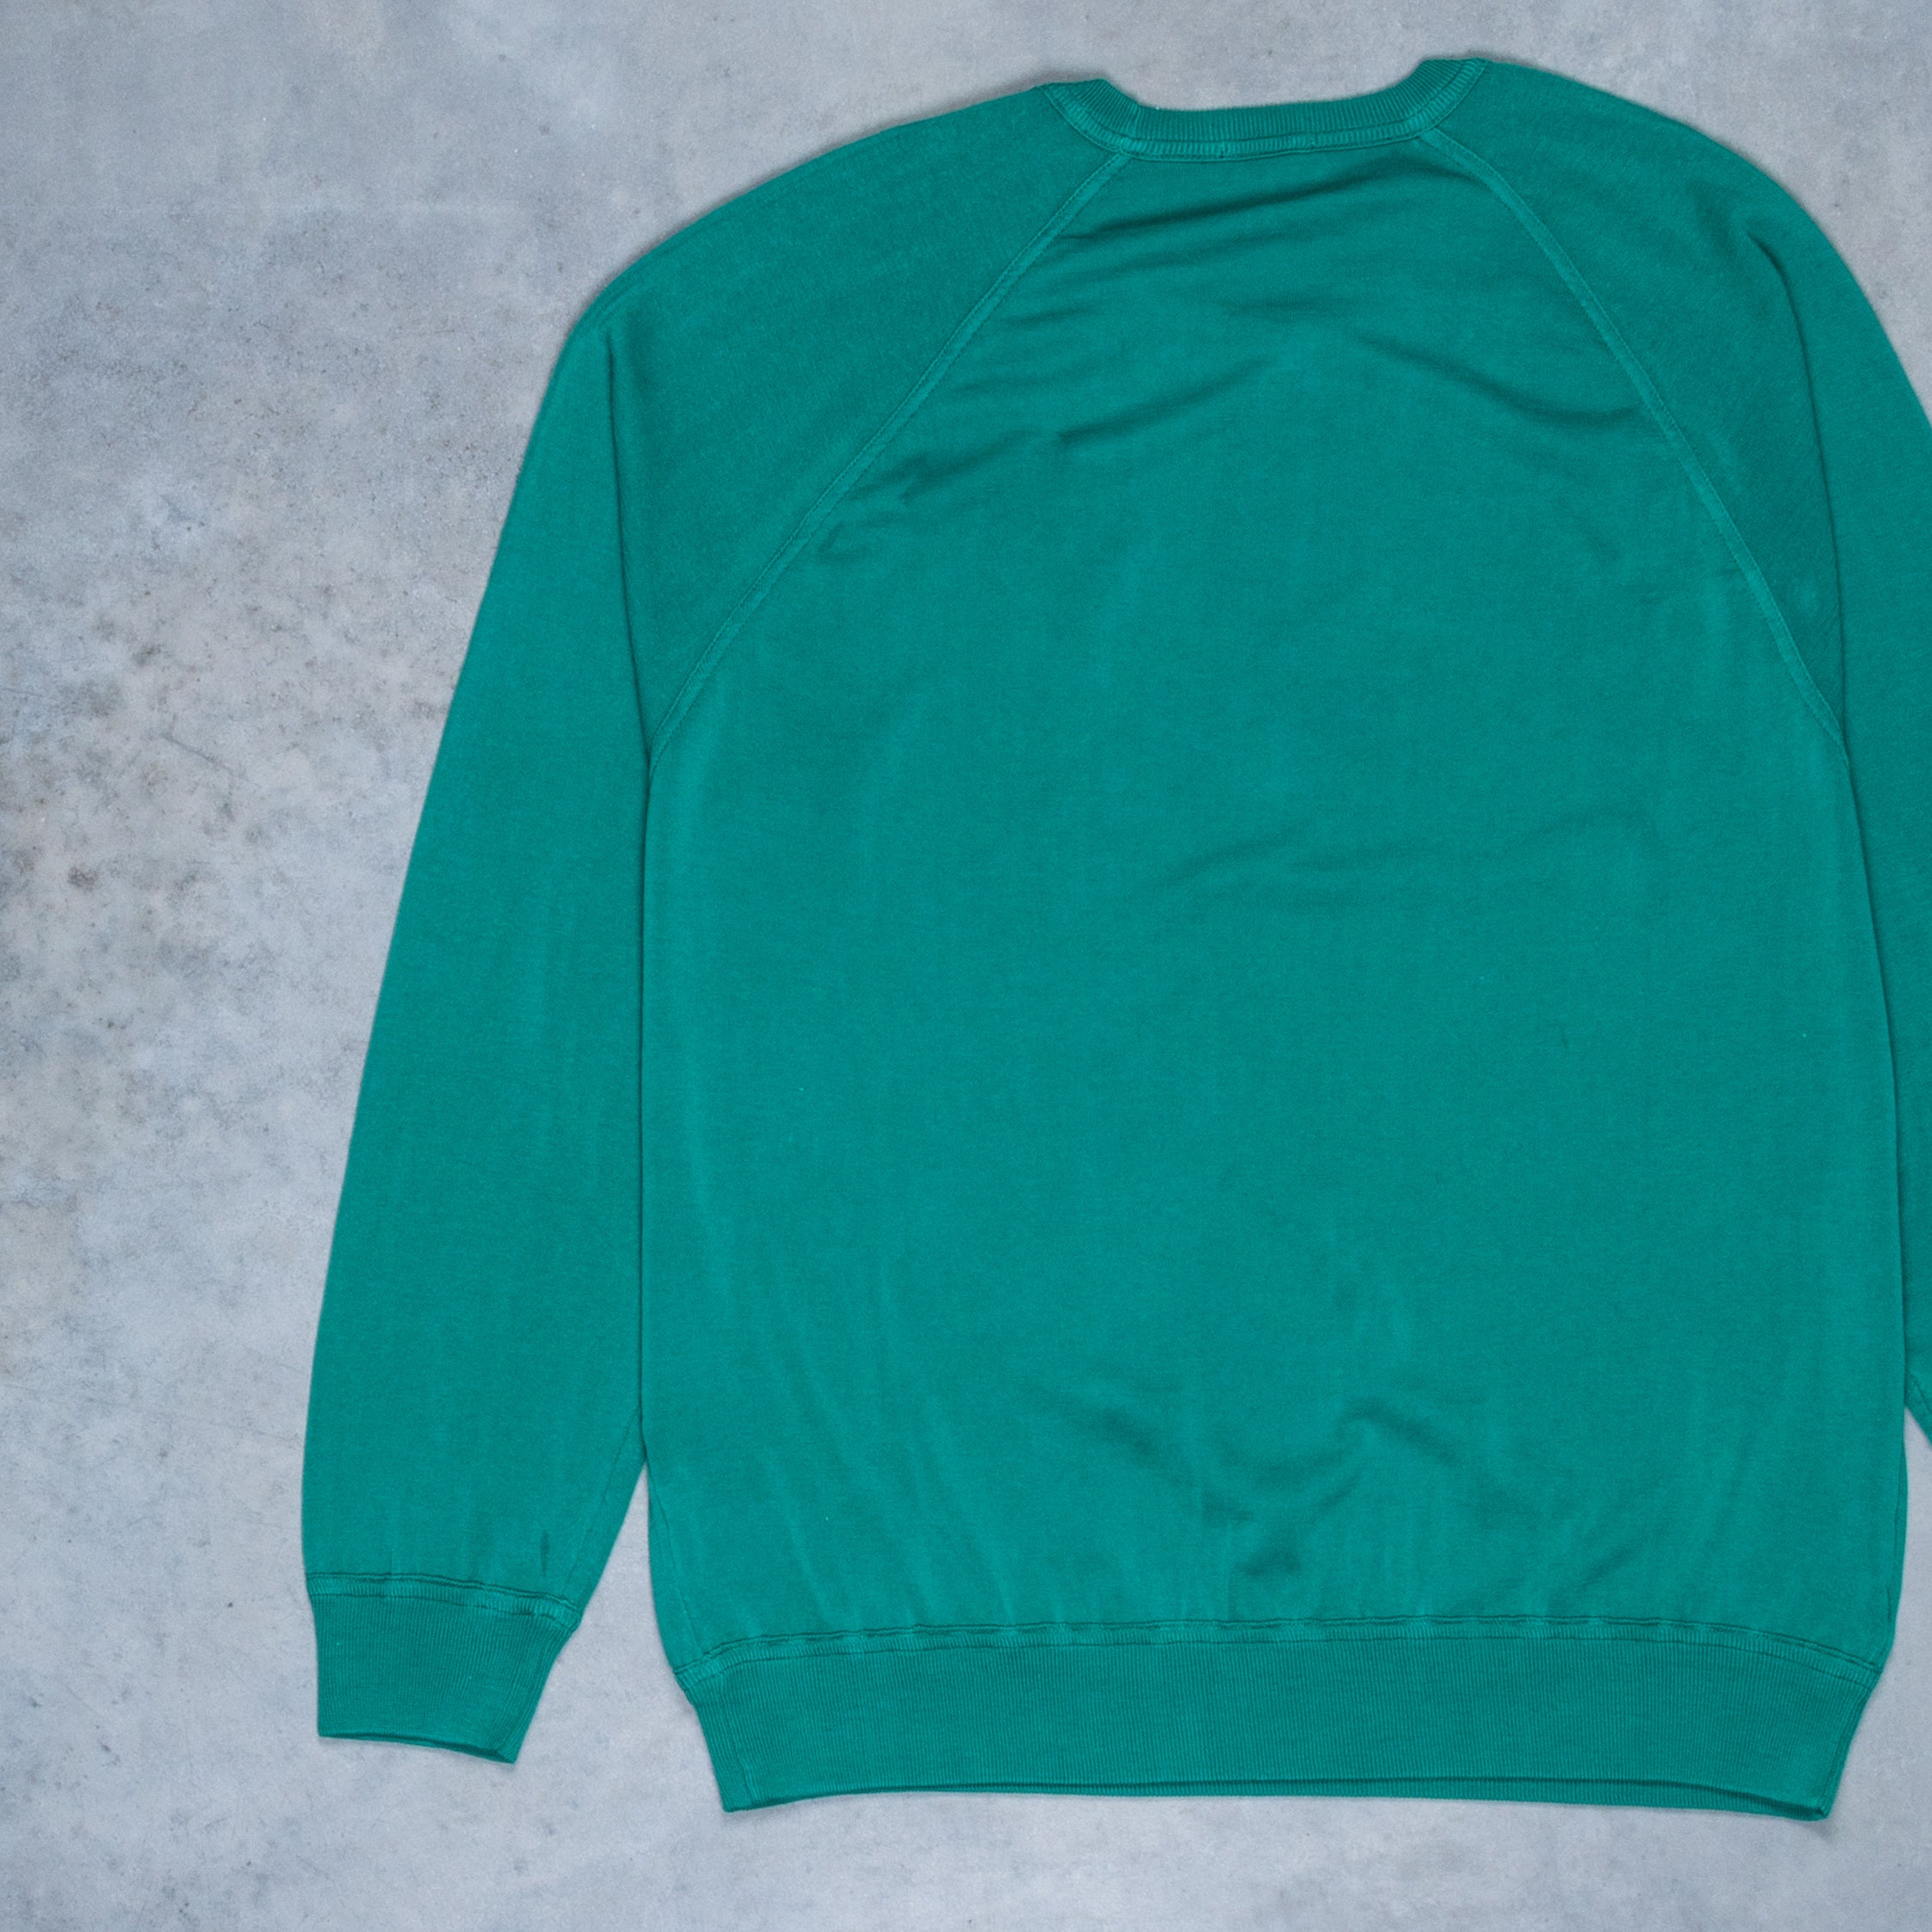 Drumohr Superlight Frost Cotton Sweater Verde Baniera